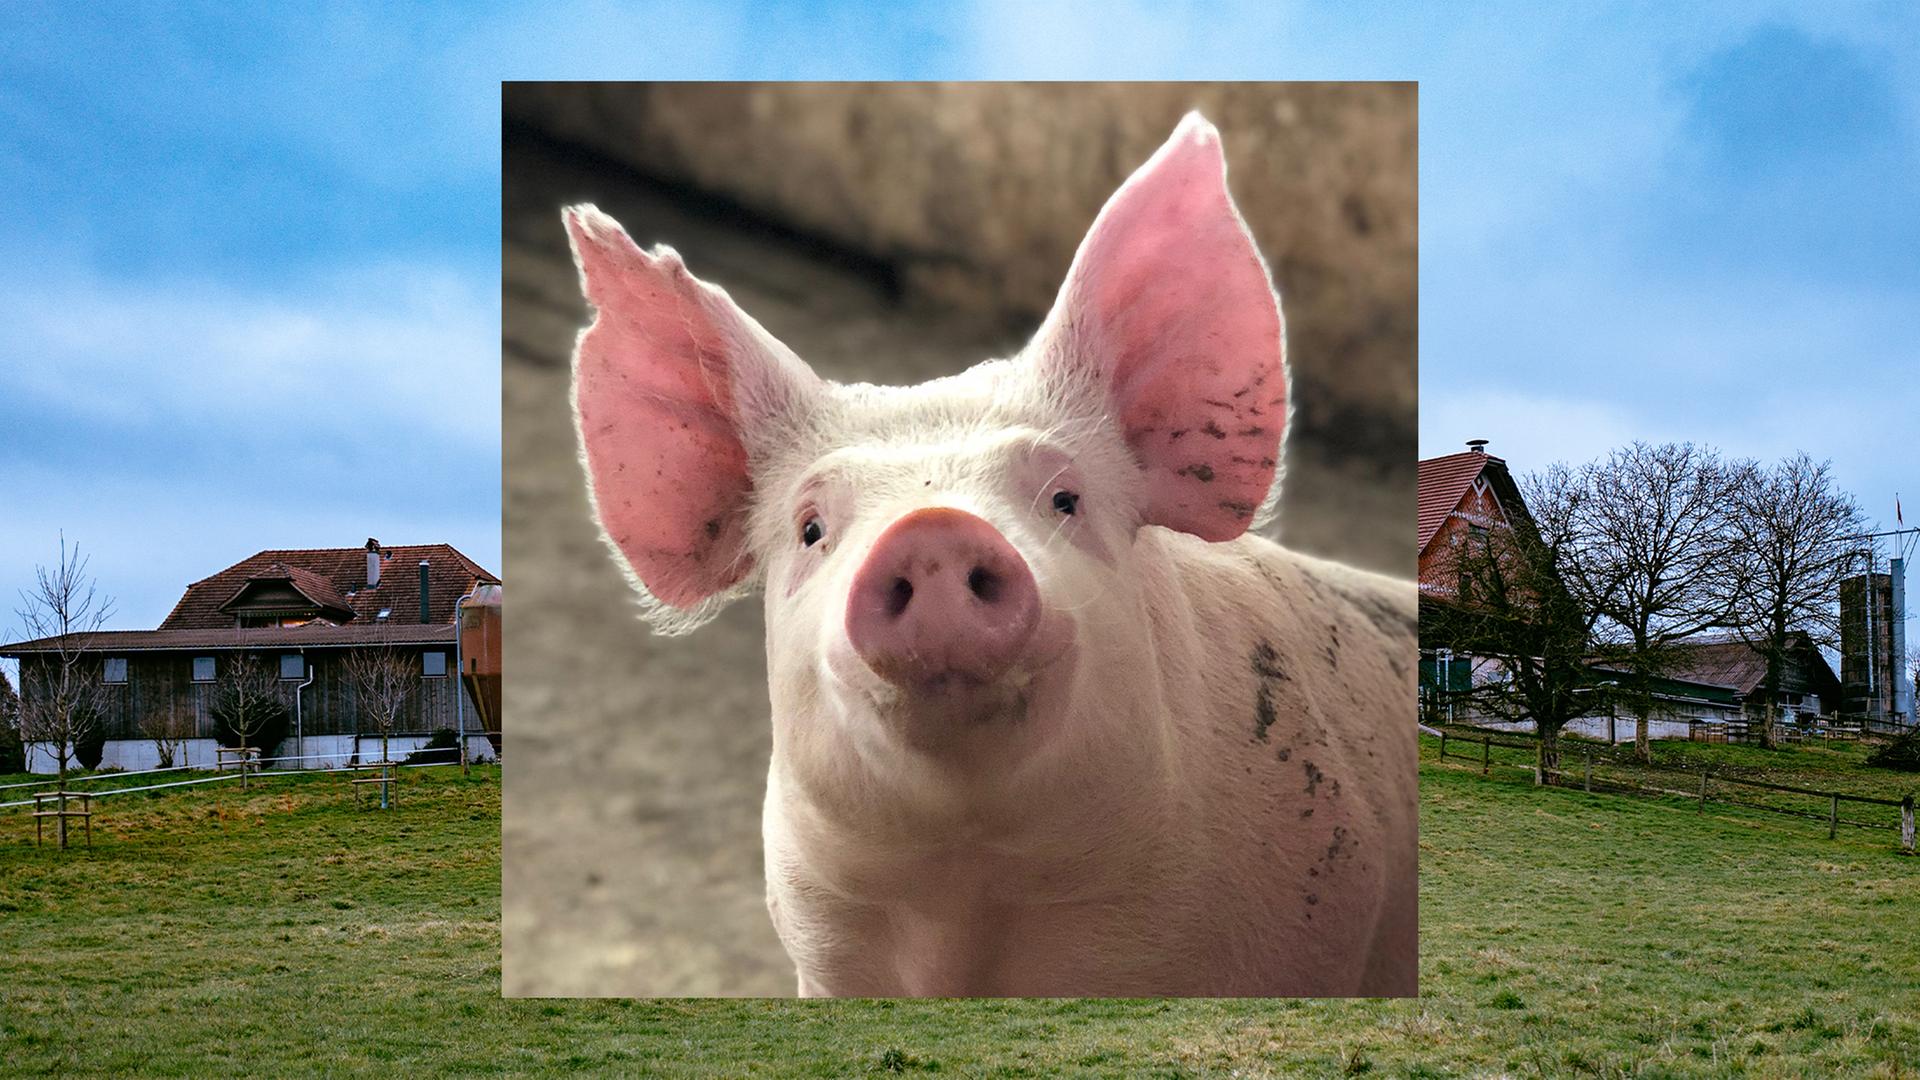 Bild in Bild: Vorn ein Schwein mit aufgestellten Ohren. Im Hintergrund grüne Wiese, blauer Himmel, ein Bauernhof